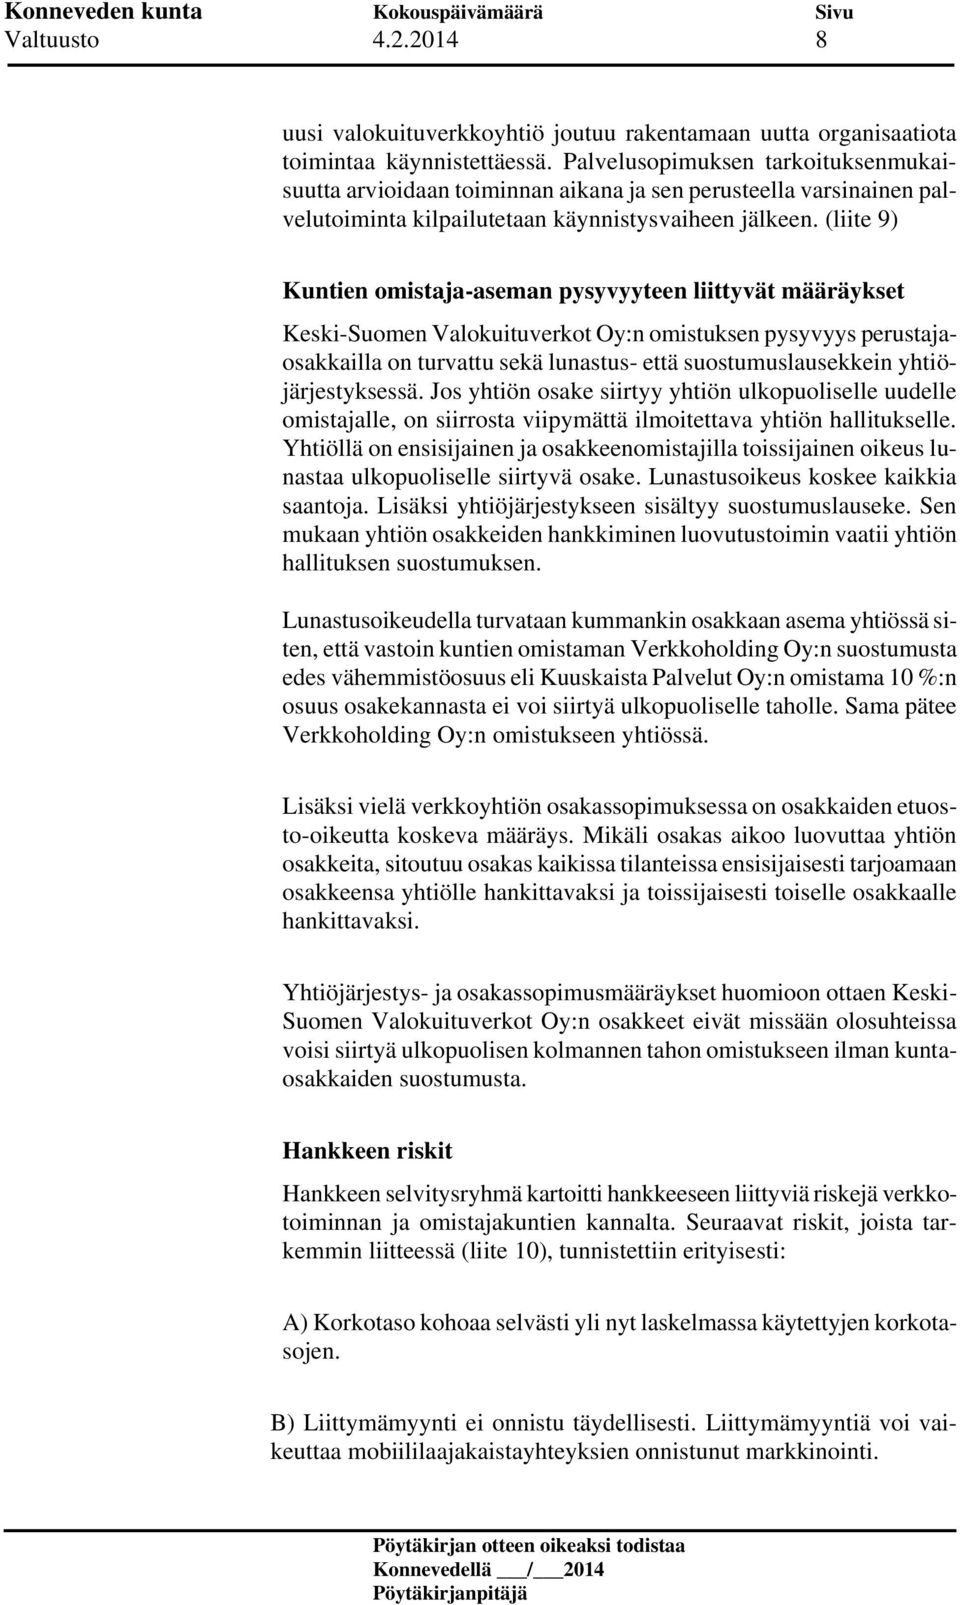 (liite 9) Kuntien omistaja-aseman pysyvyyteen liittyvät määräykset Keski-Suomen Valokuituverkot Oy:n omistuksen pysyvyys perustajaosakkailla on turvattu sekä lunastus- että suostumuslausekkein